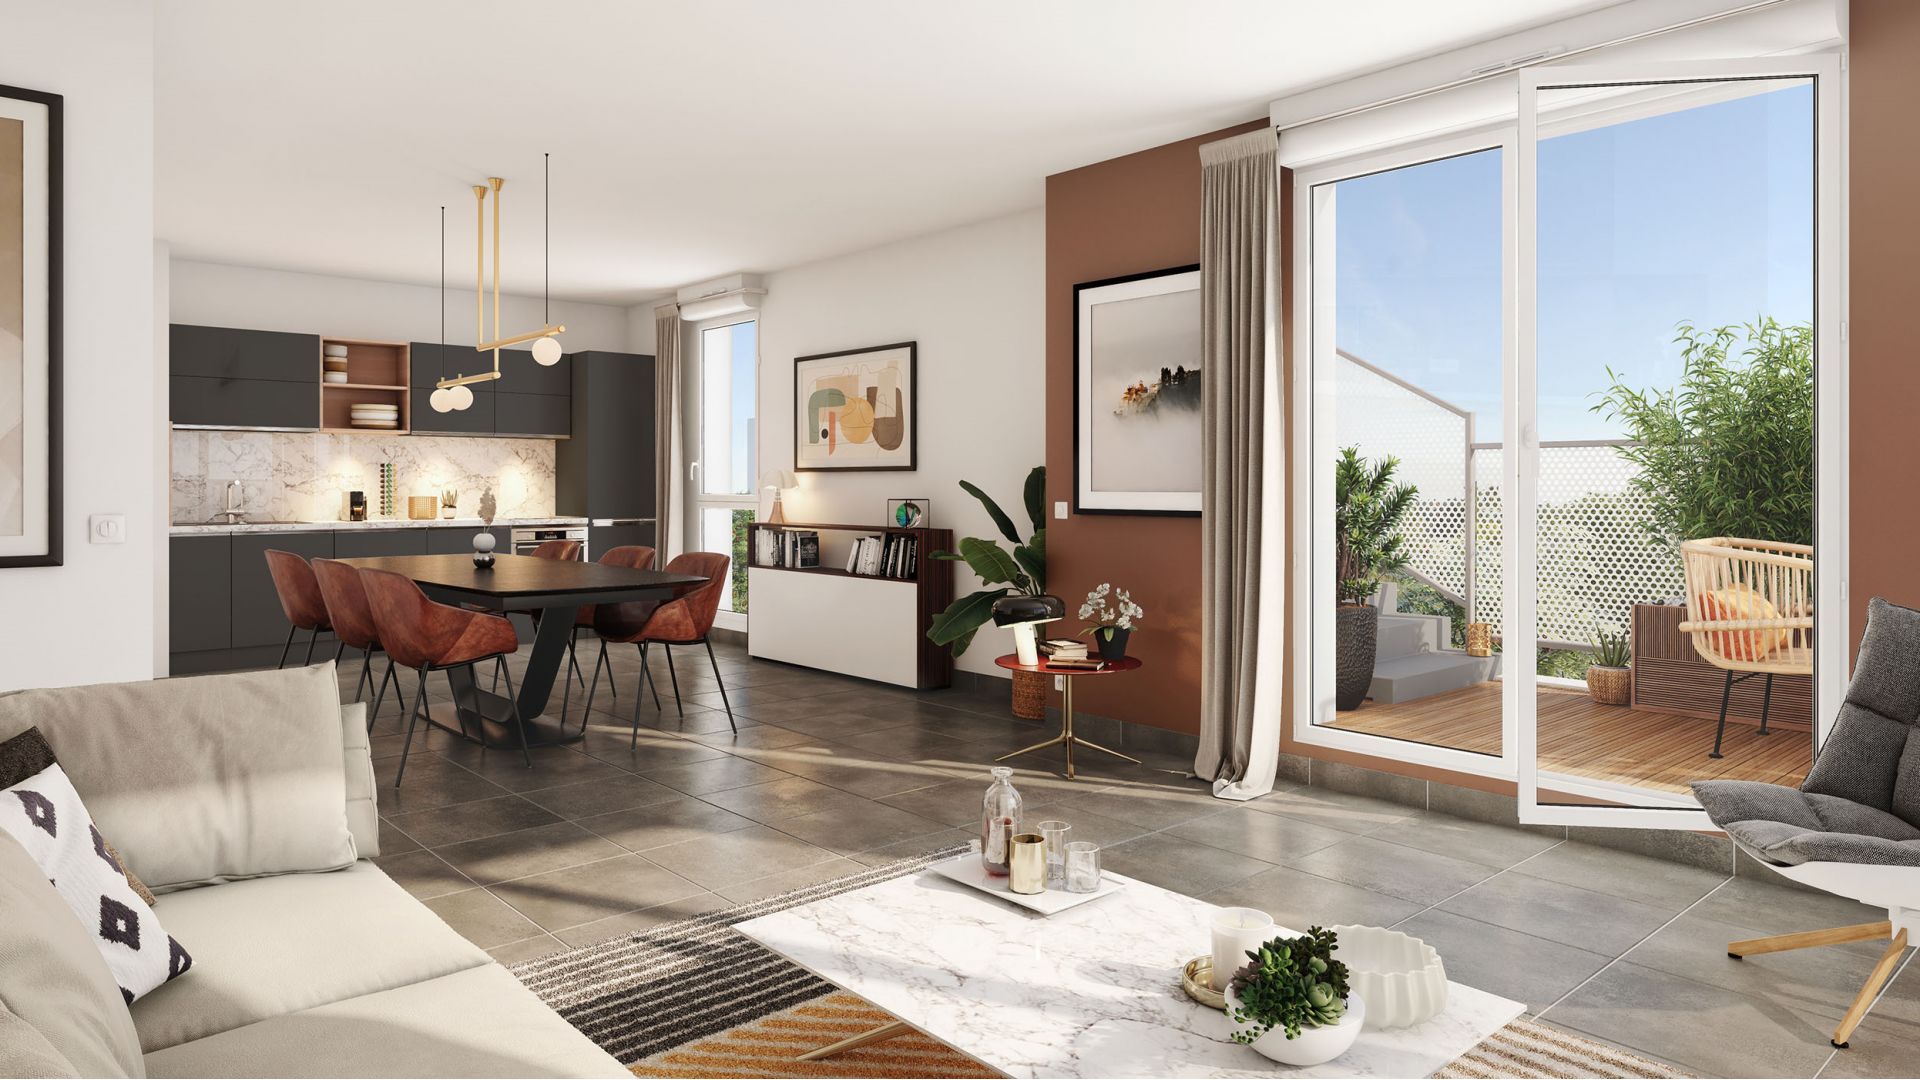 Greencity Immobilier - Résidence Amplitude - achat appartements neufs du T1 au T5 - Bezons - 95870 - Vue intérieure